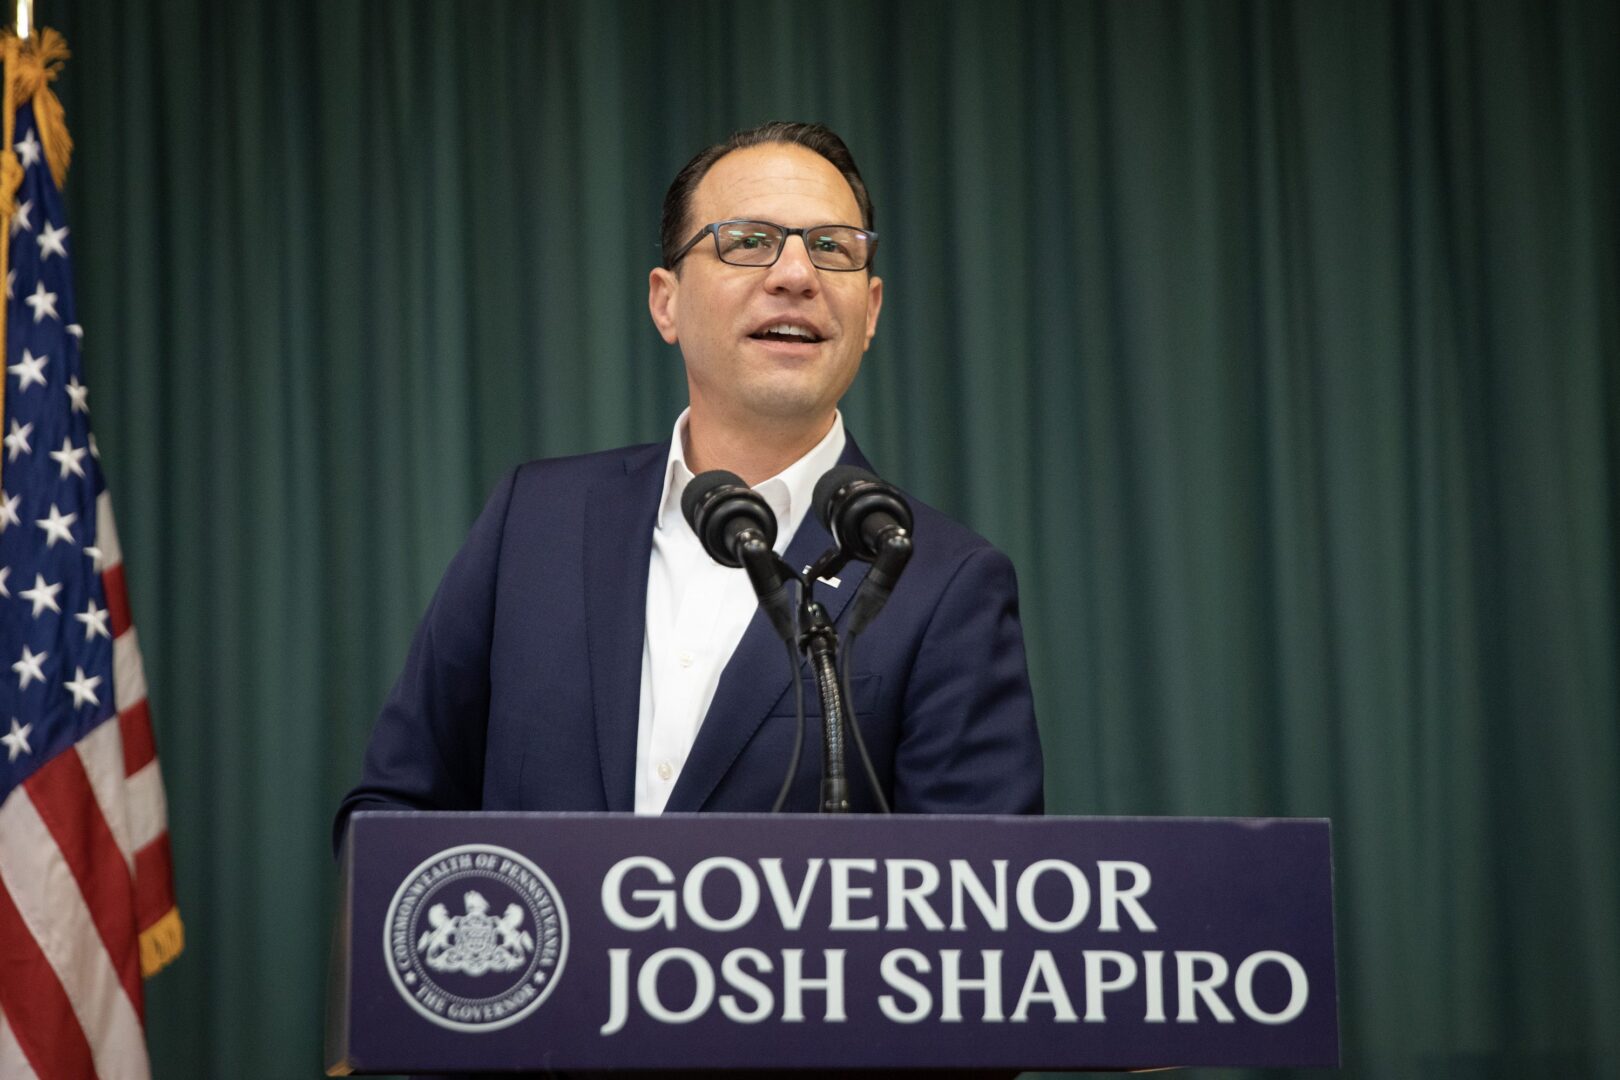 Governor Josh Shapiro in Scranton, Pennsylvania.